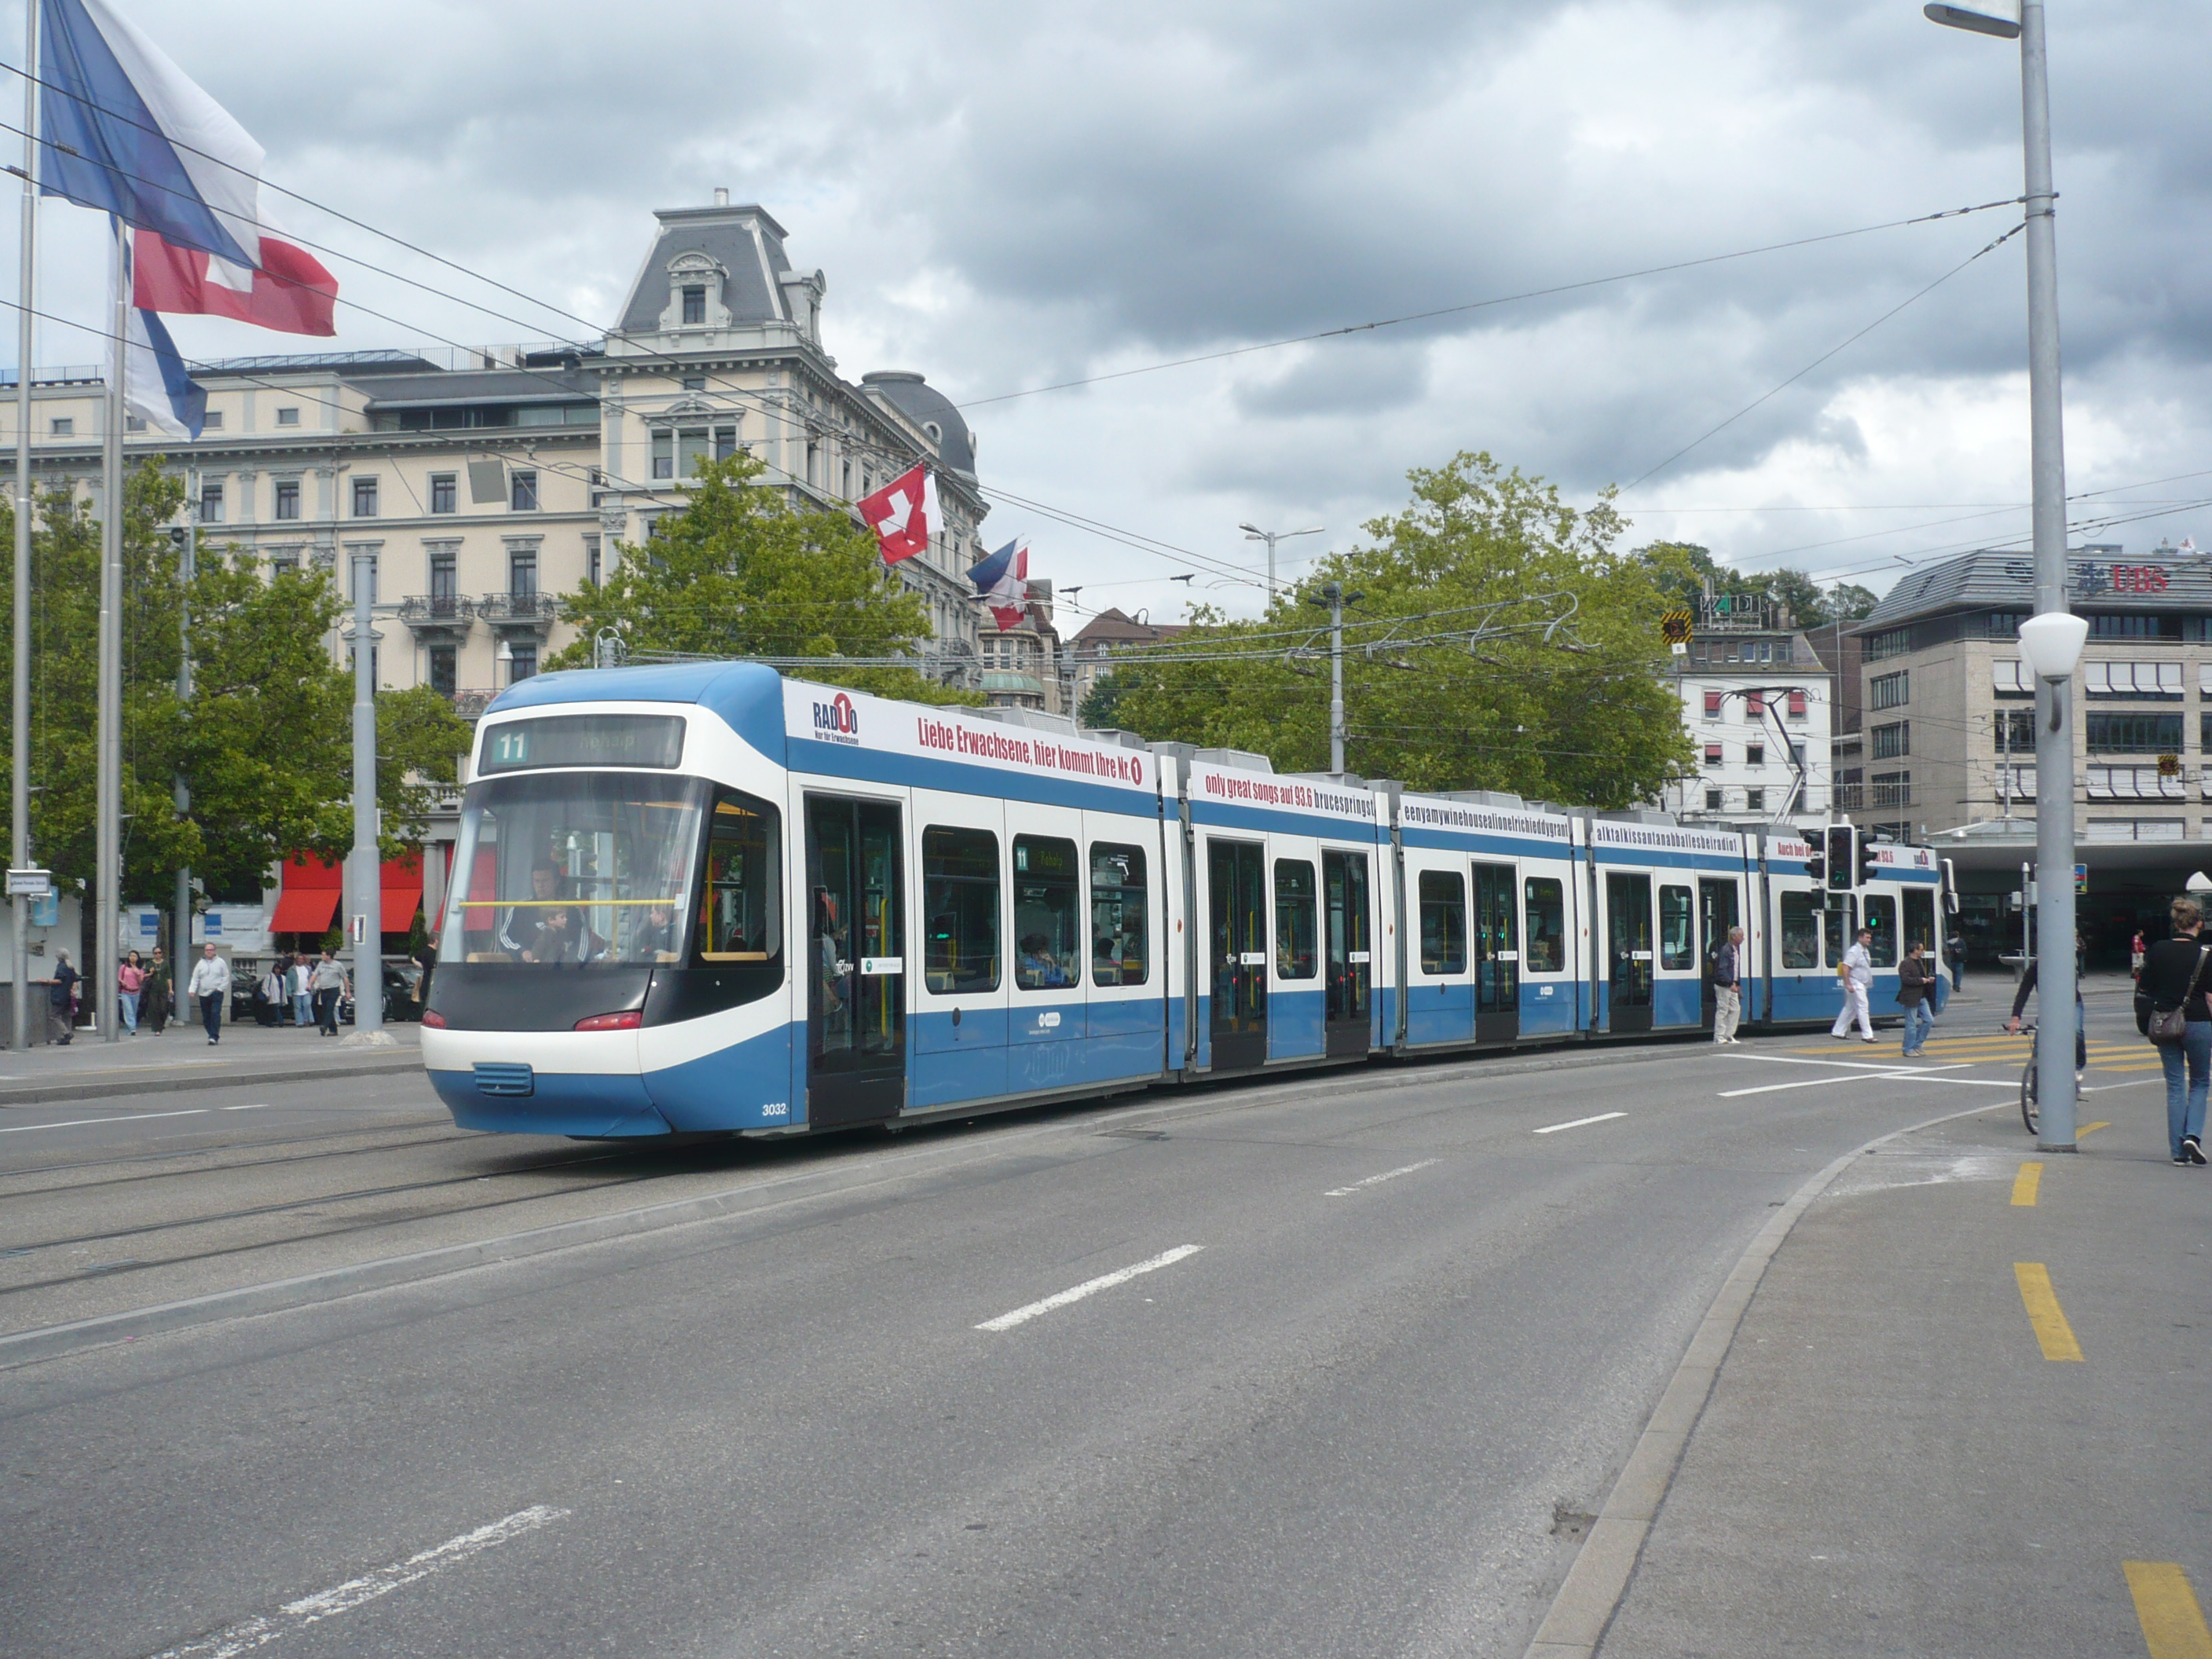 Zurich tram photo